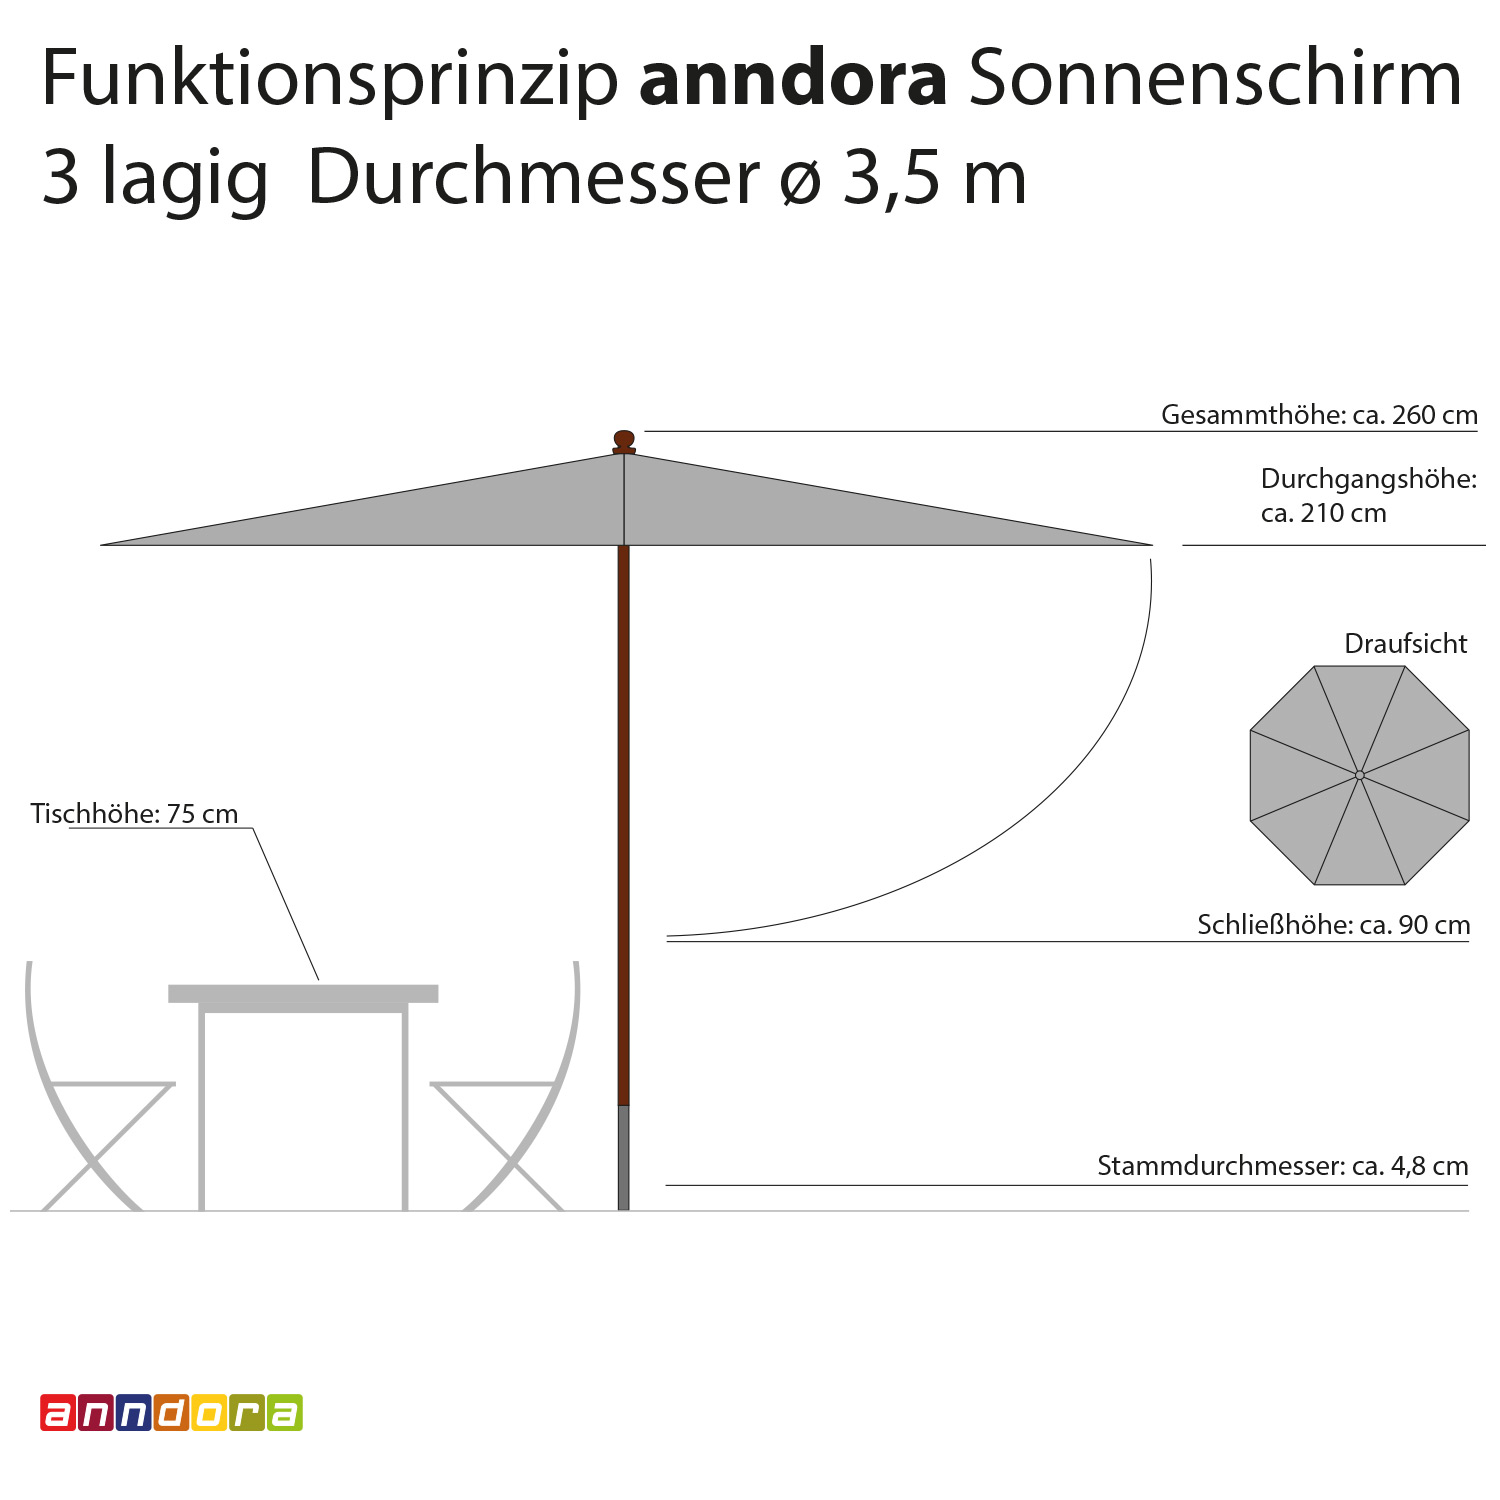 anndora Sonnenschirm 3,5 m rund 3-lagig Navy Blau UV-Schutz - 3